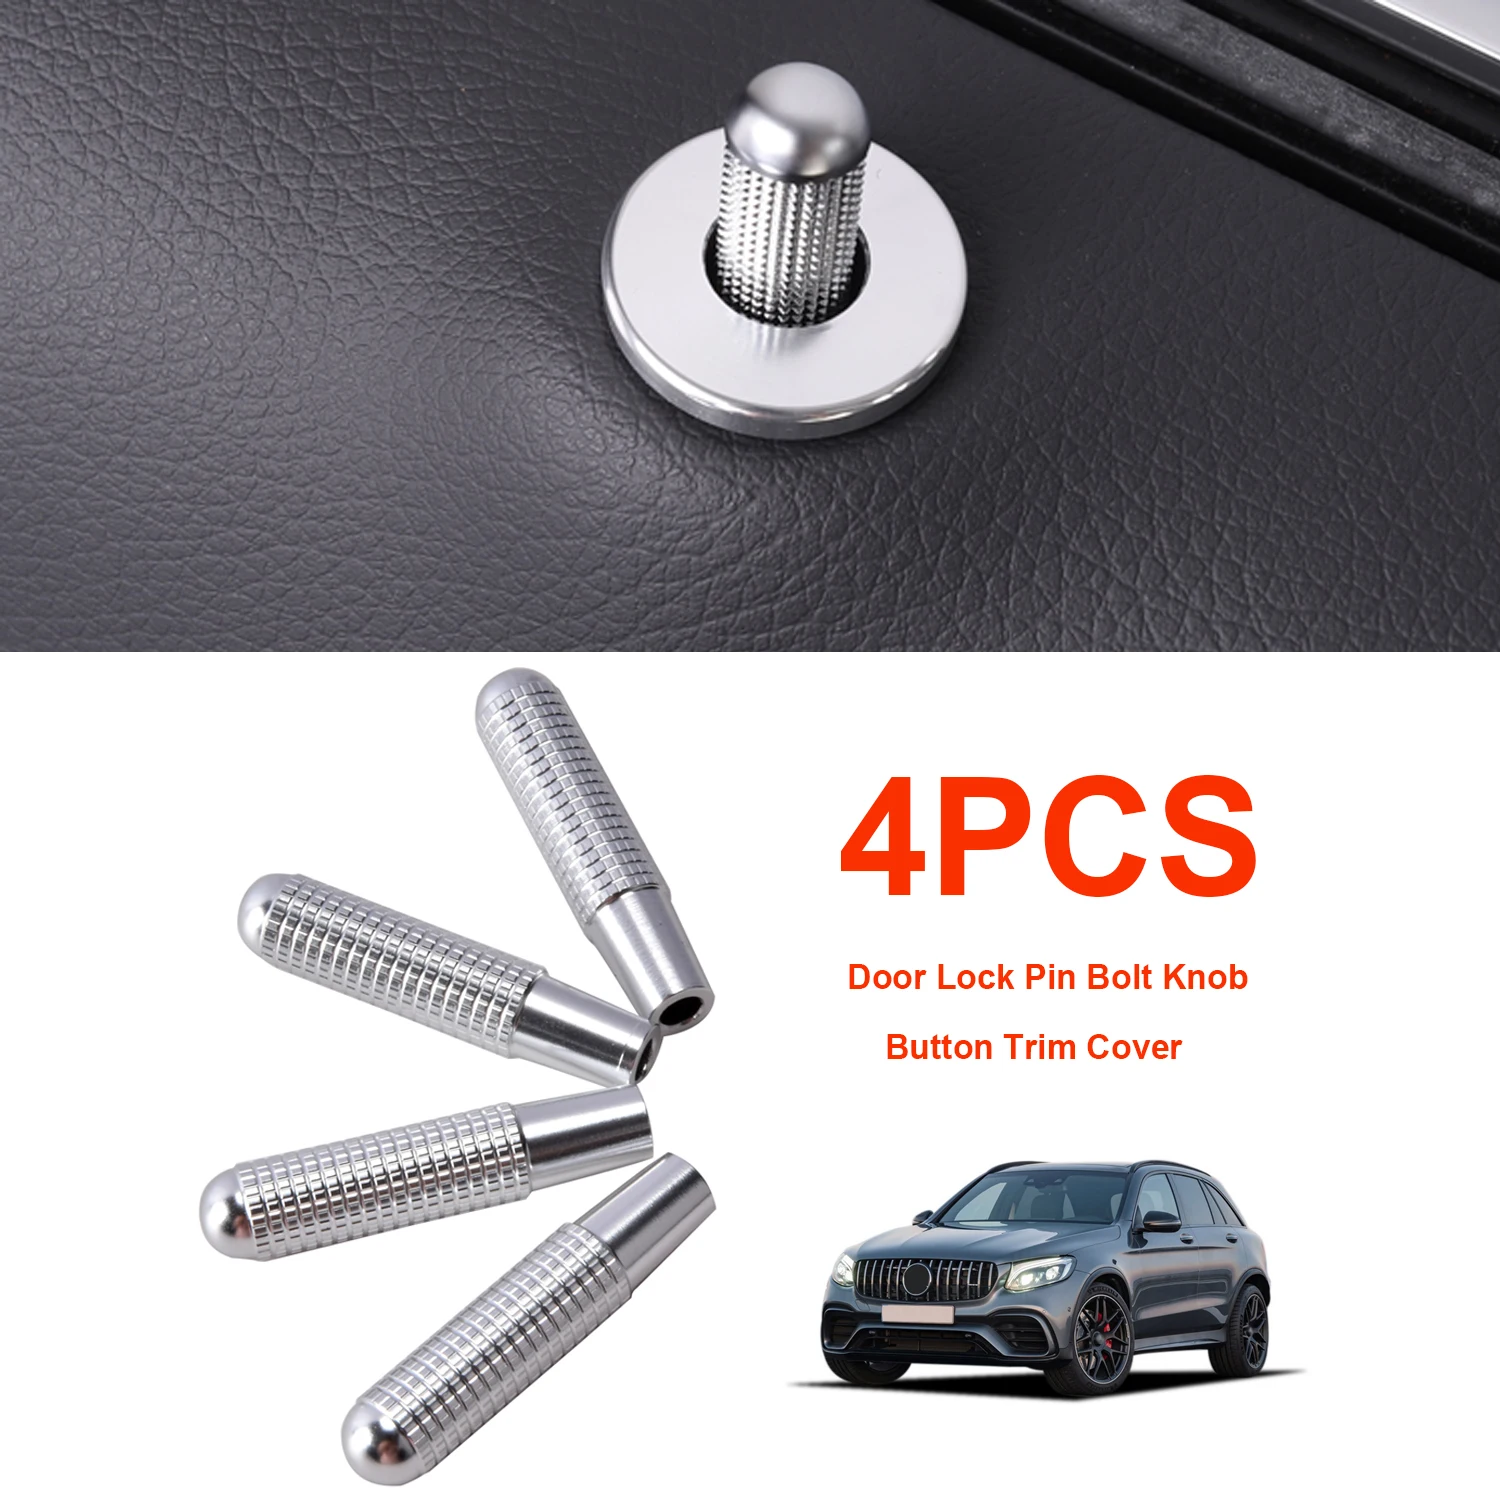 

4 pcs a set Door Lock Pin Bolt Knob Trim Cover For Mercedes Benz A Cla Gla Class C117 X156 C W205 E W212 W213 Glc X253 Glk